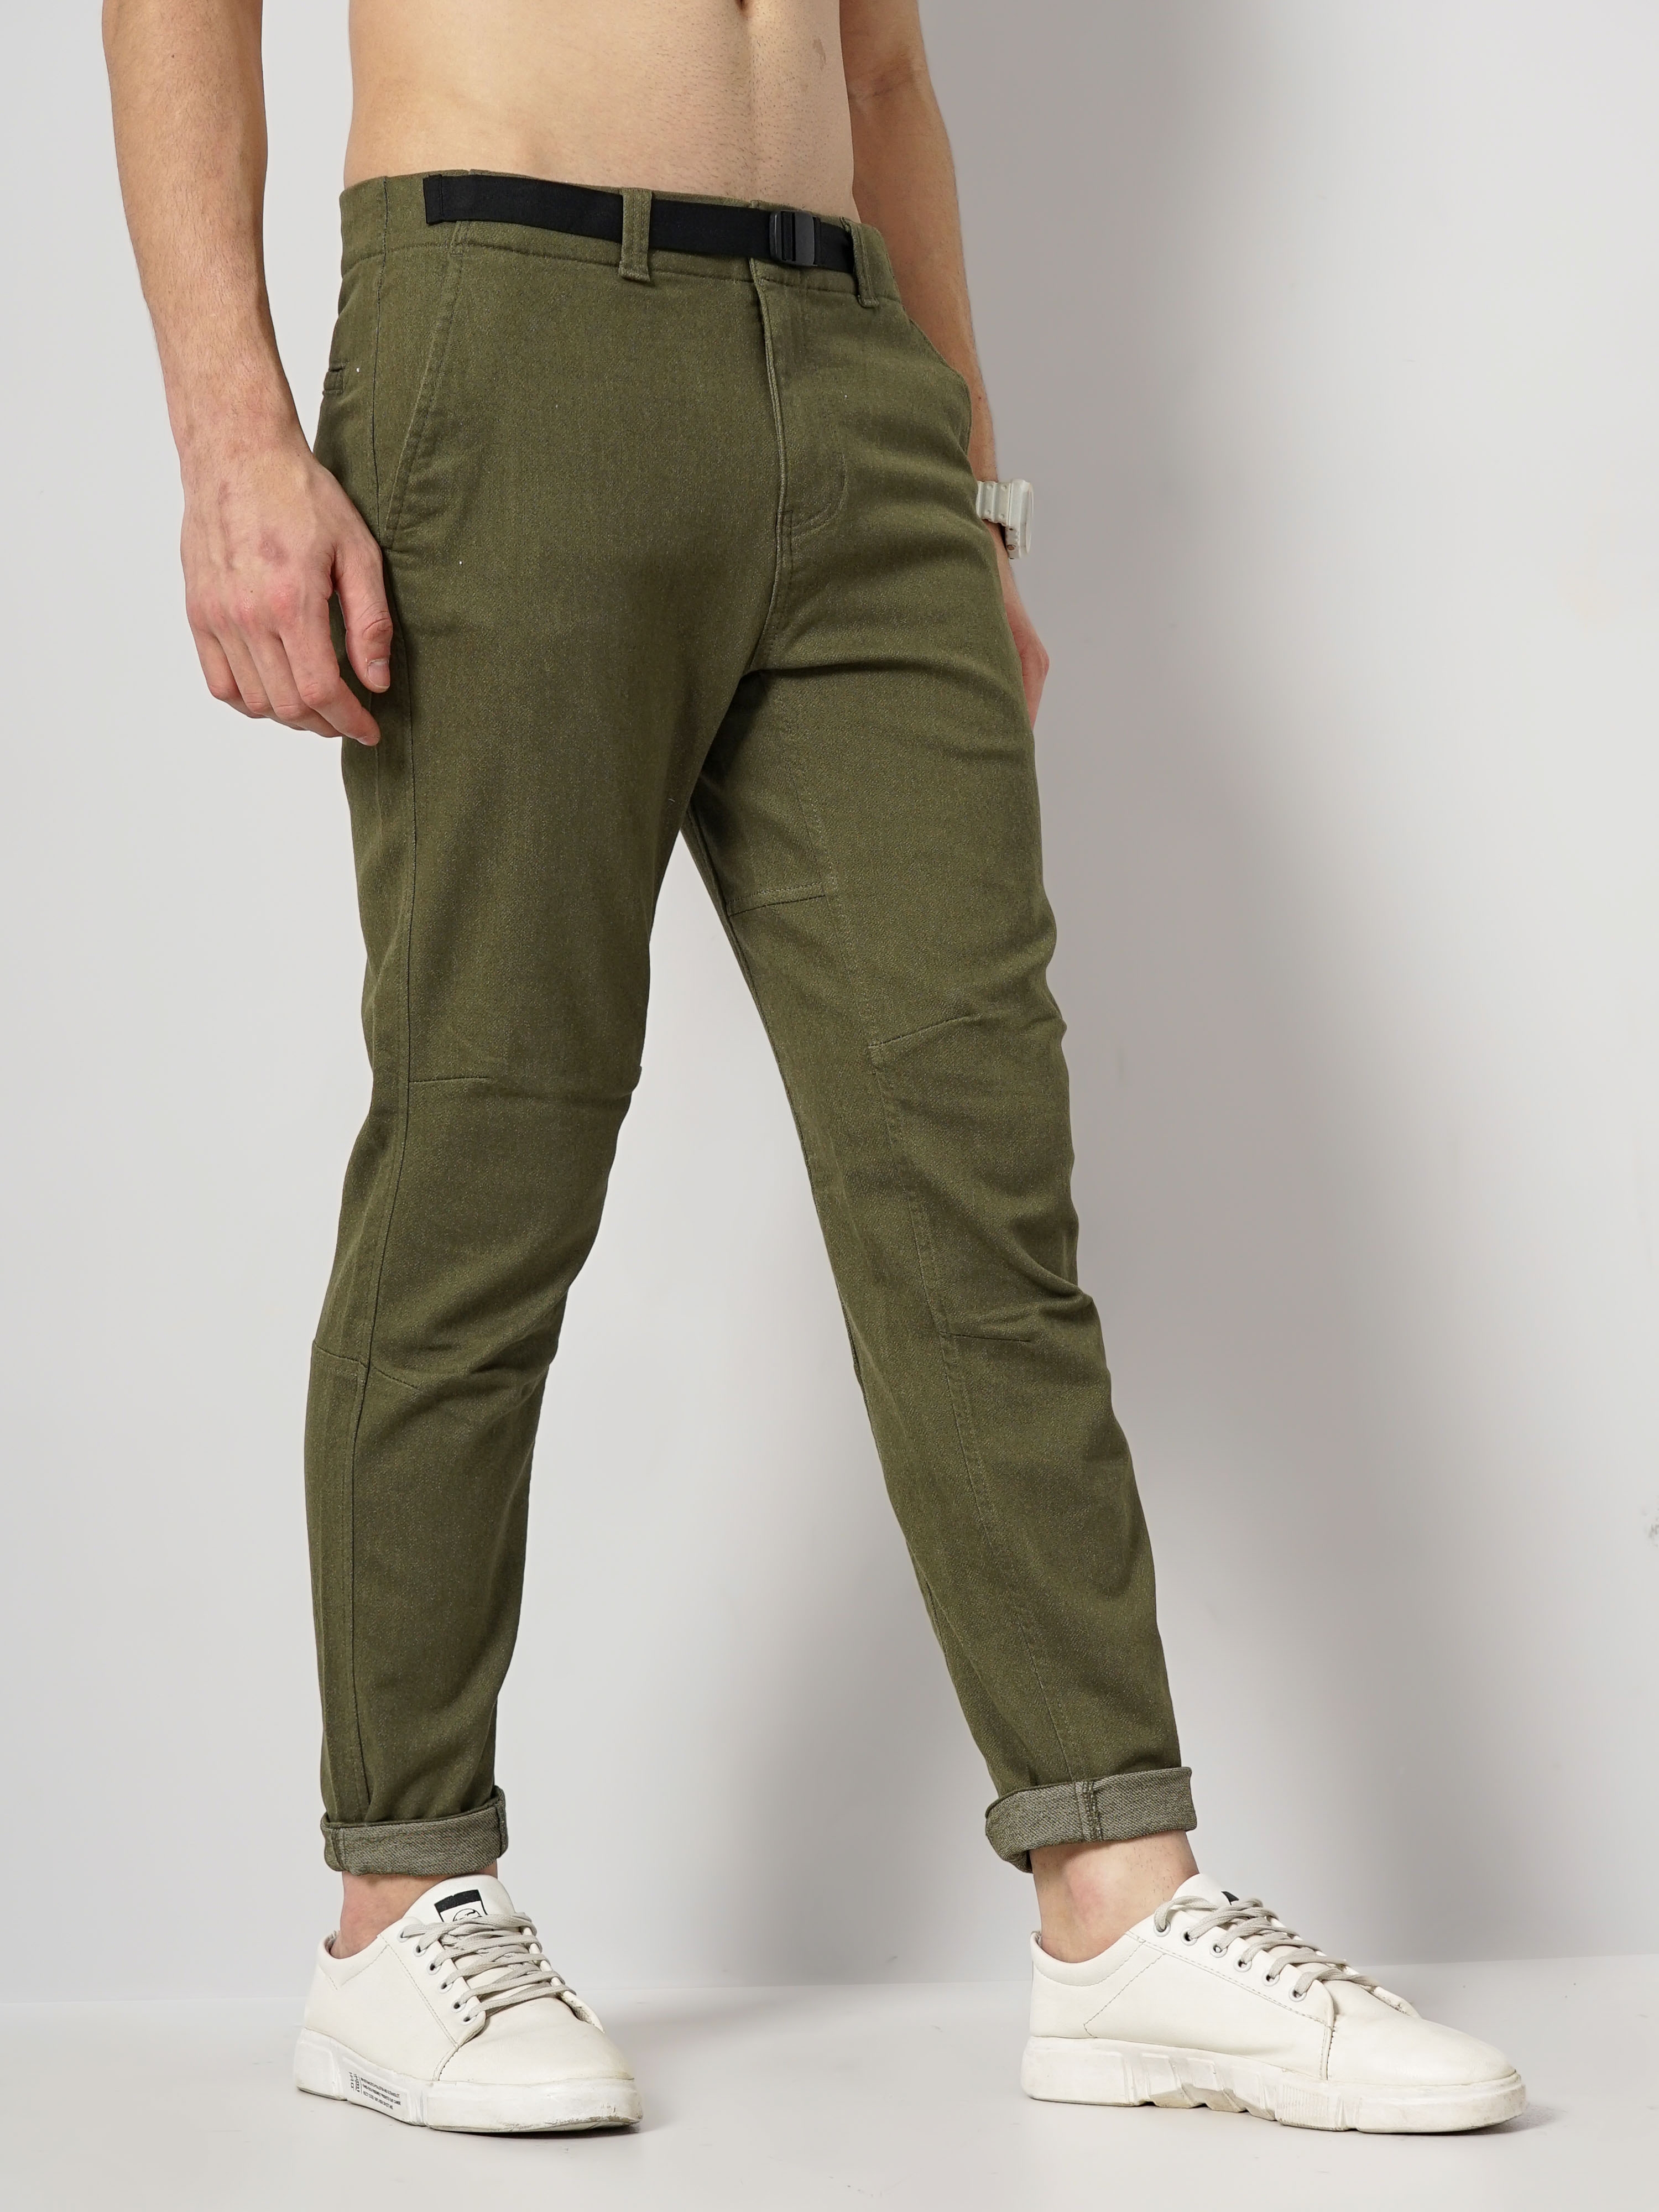 Celio Men's Solid Fashion Pants